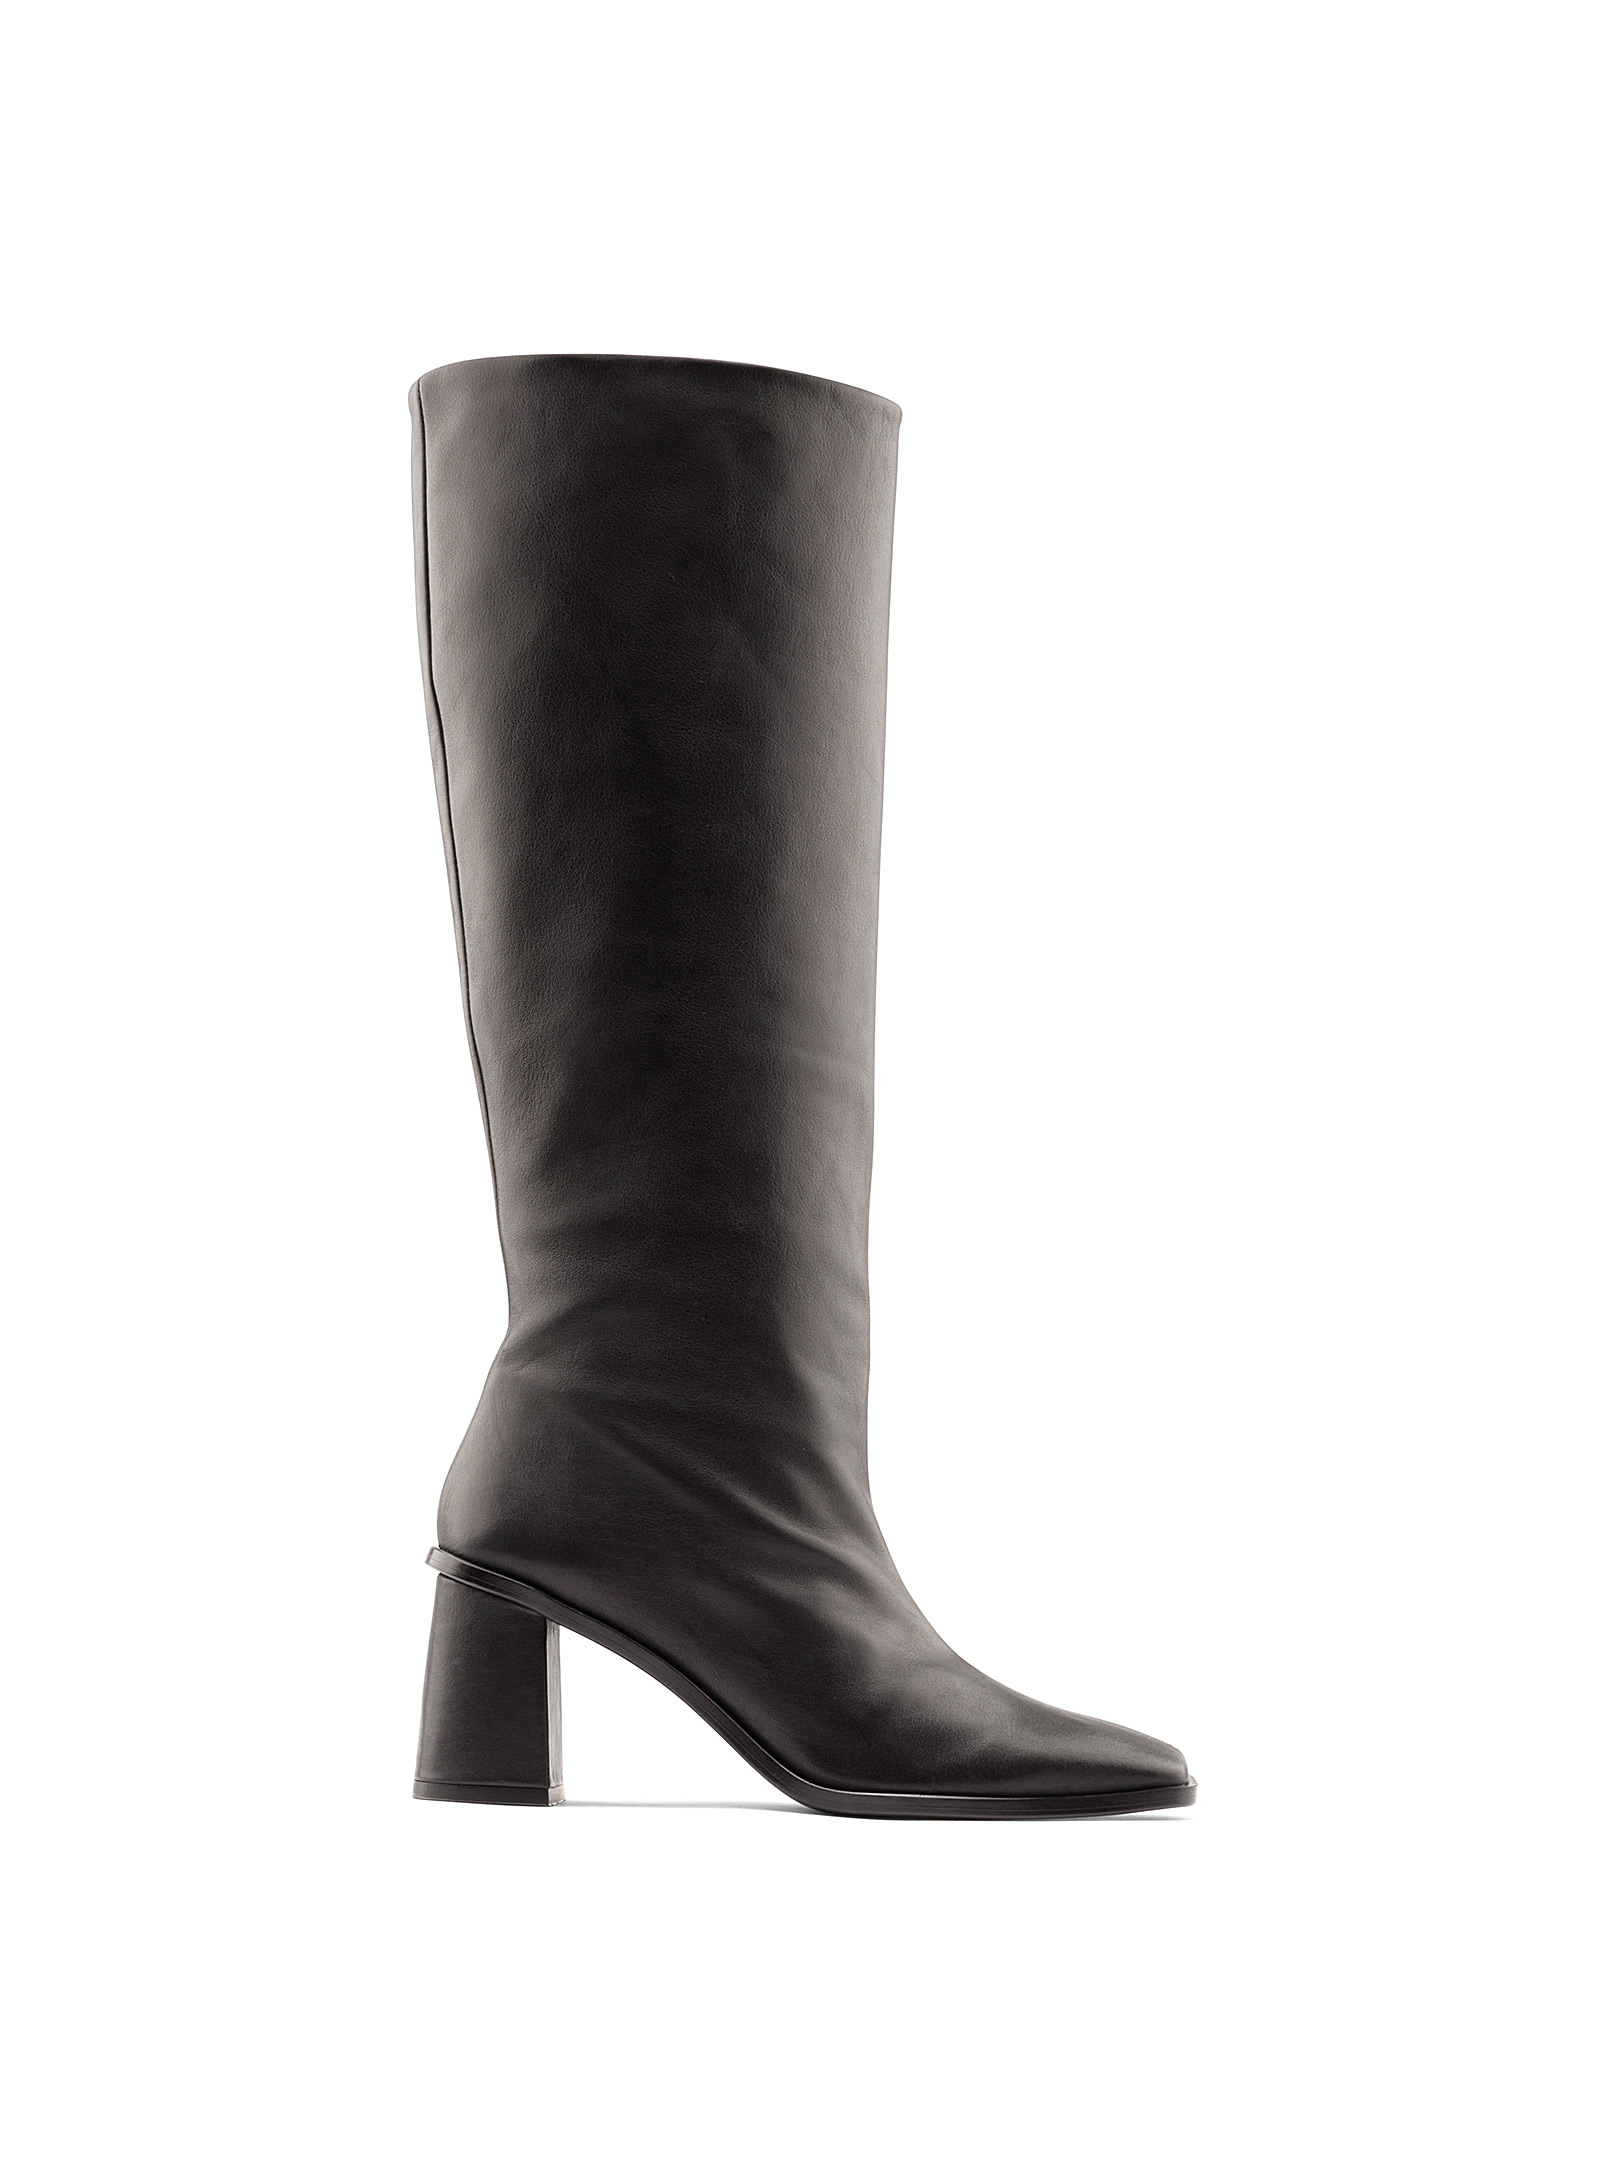 Maguire Lorca Block-heel Knee-high Boots Women In Black